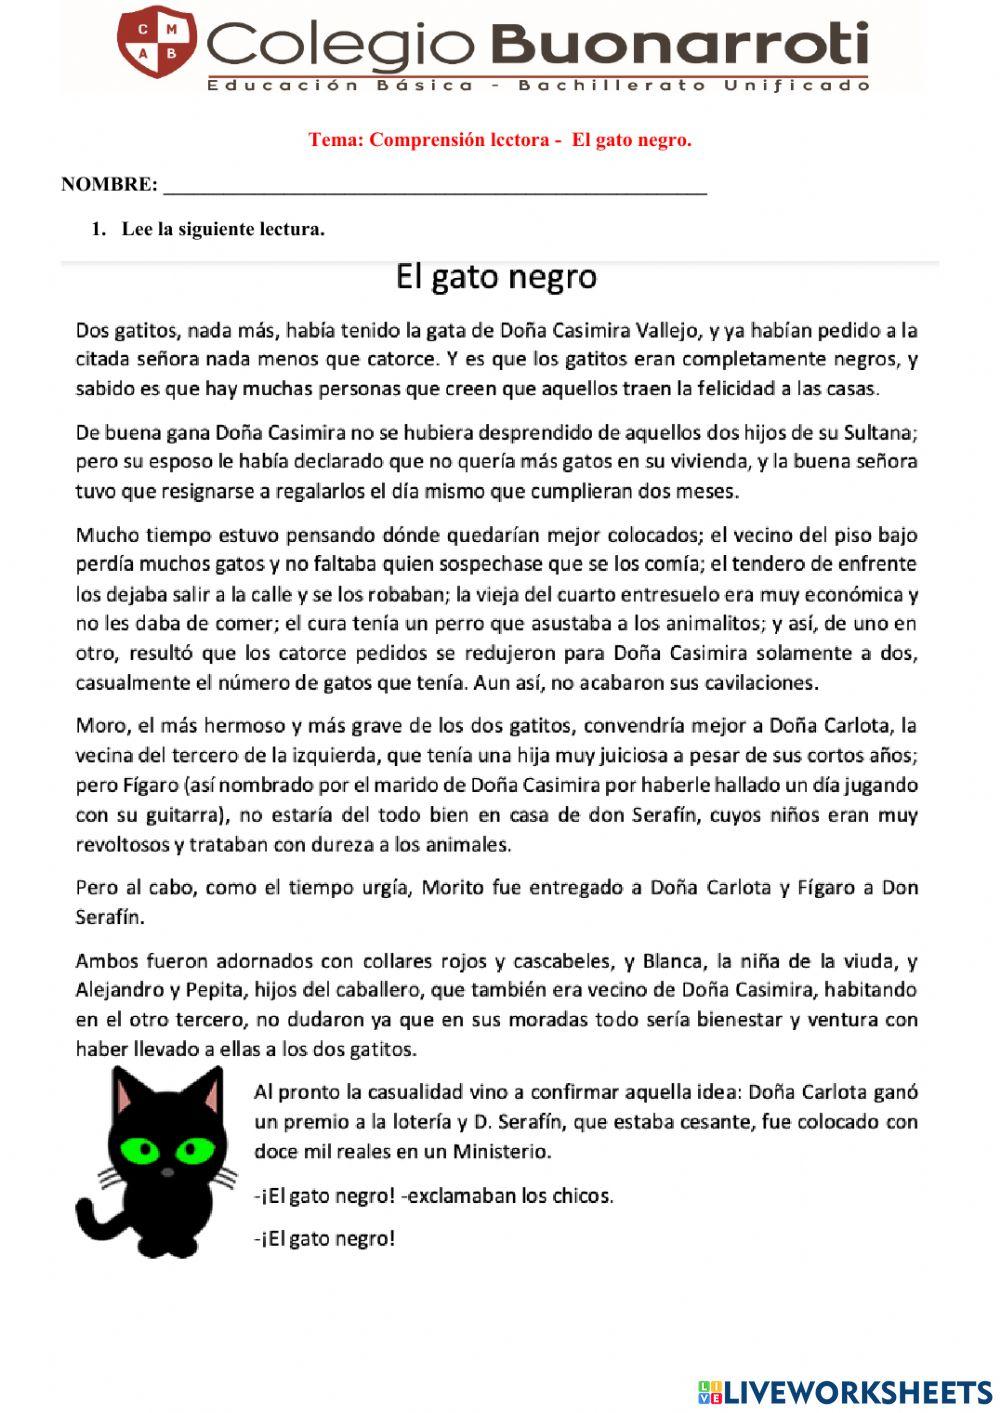 Comprensión lectora - El gato negro